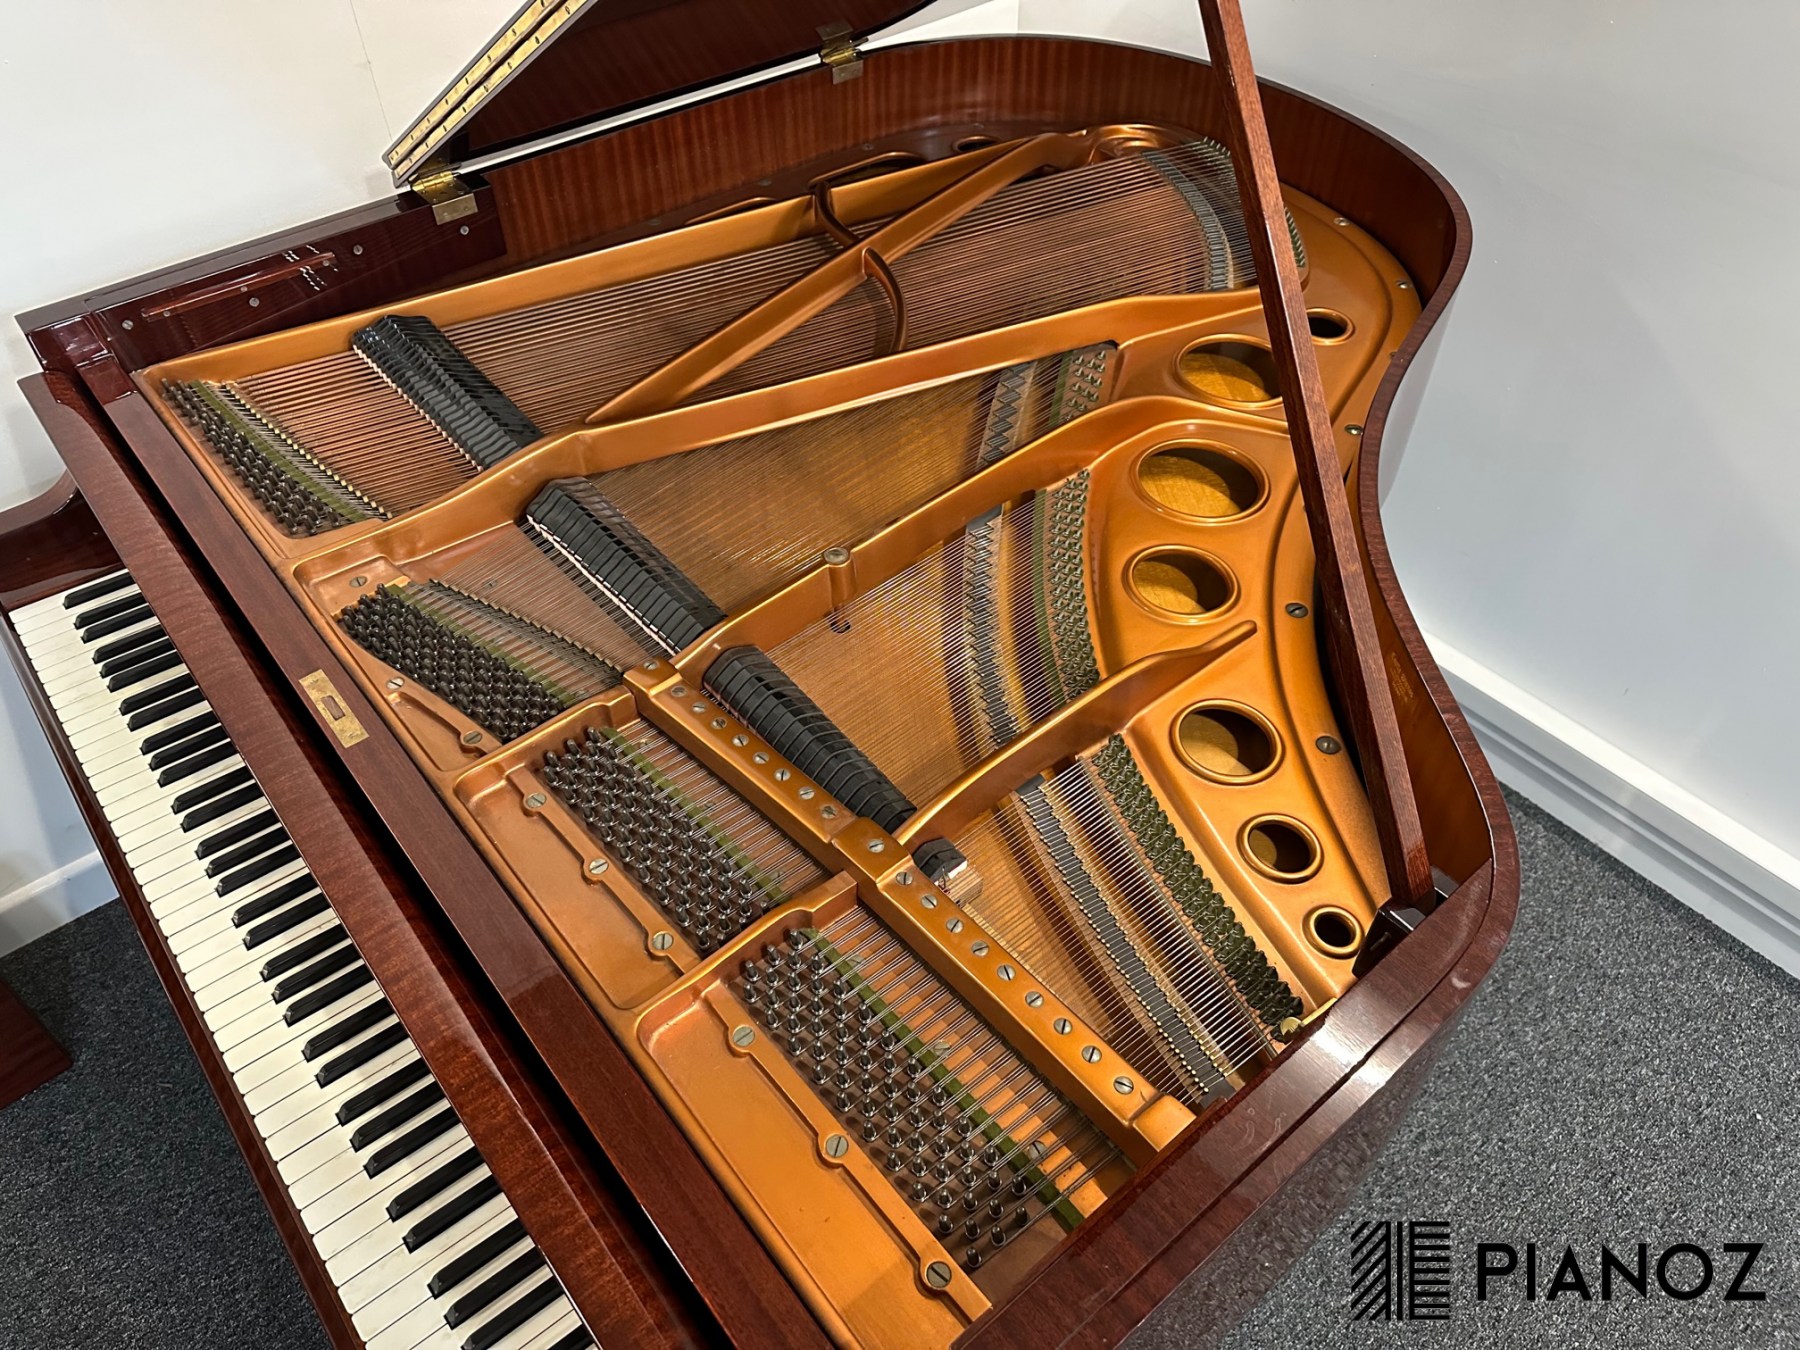 Bosendorfer 170 Baby Grand Piano piano for sale in UK